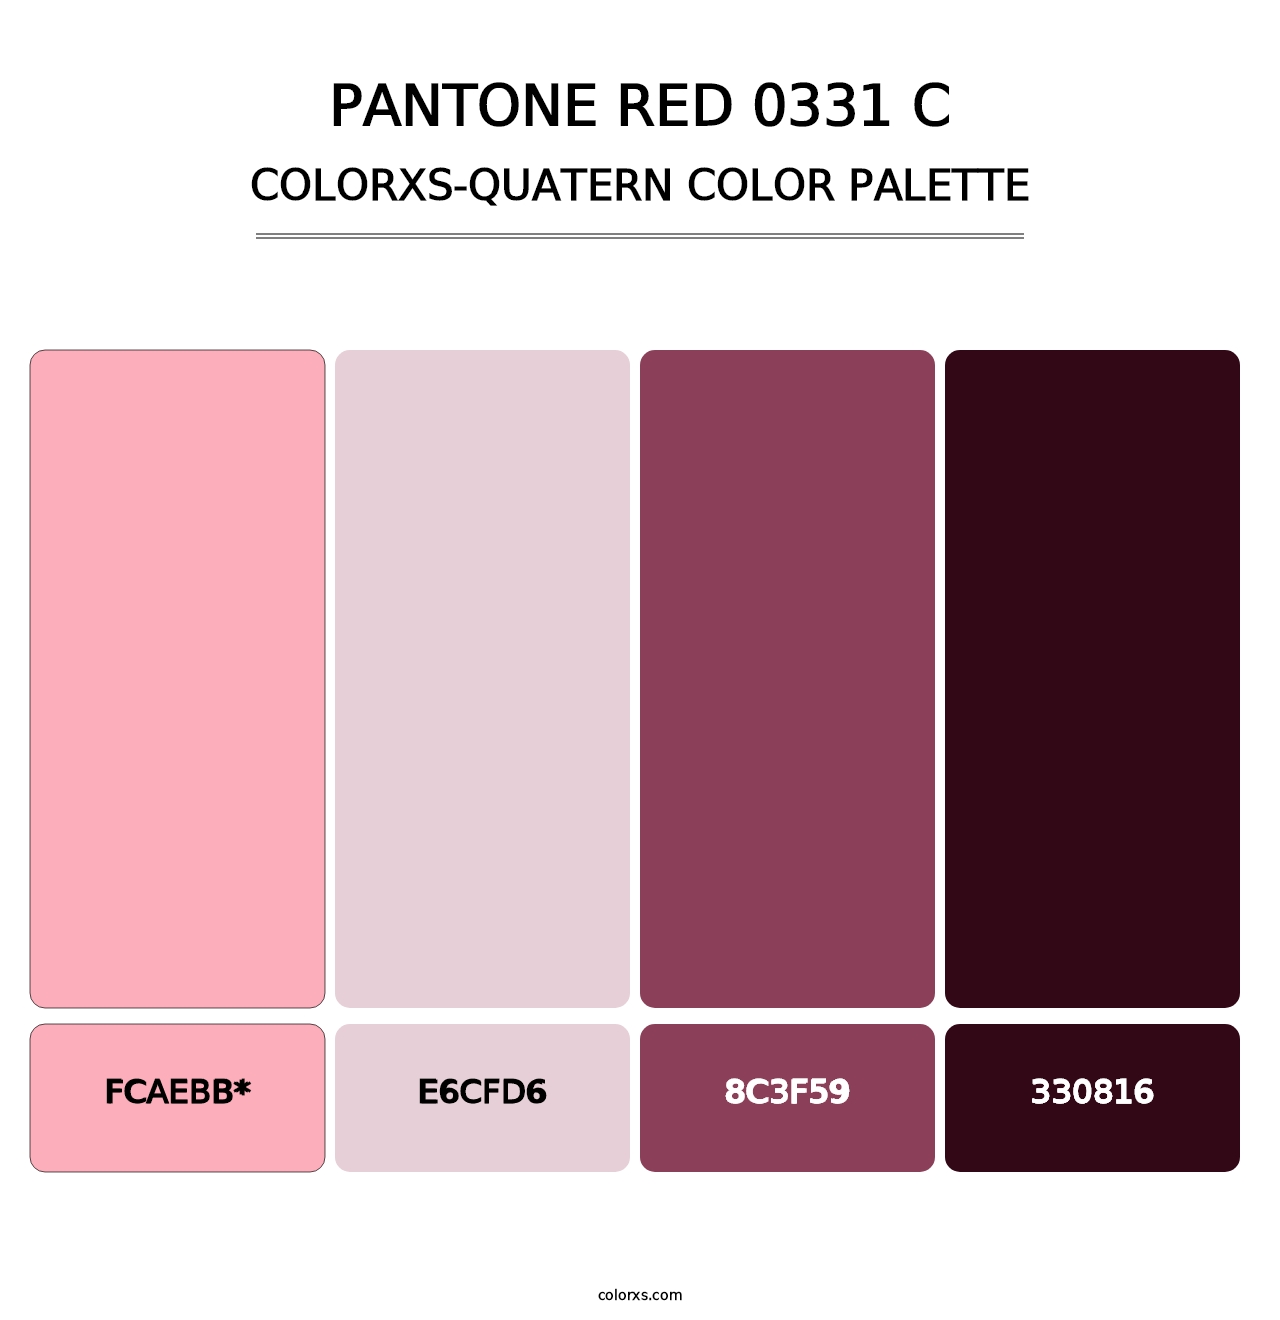 PANTONE Red 0331 C - Colorxs Quad Palette